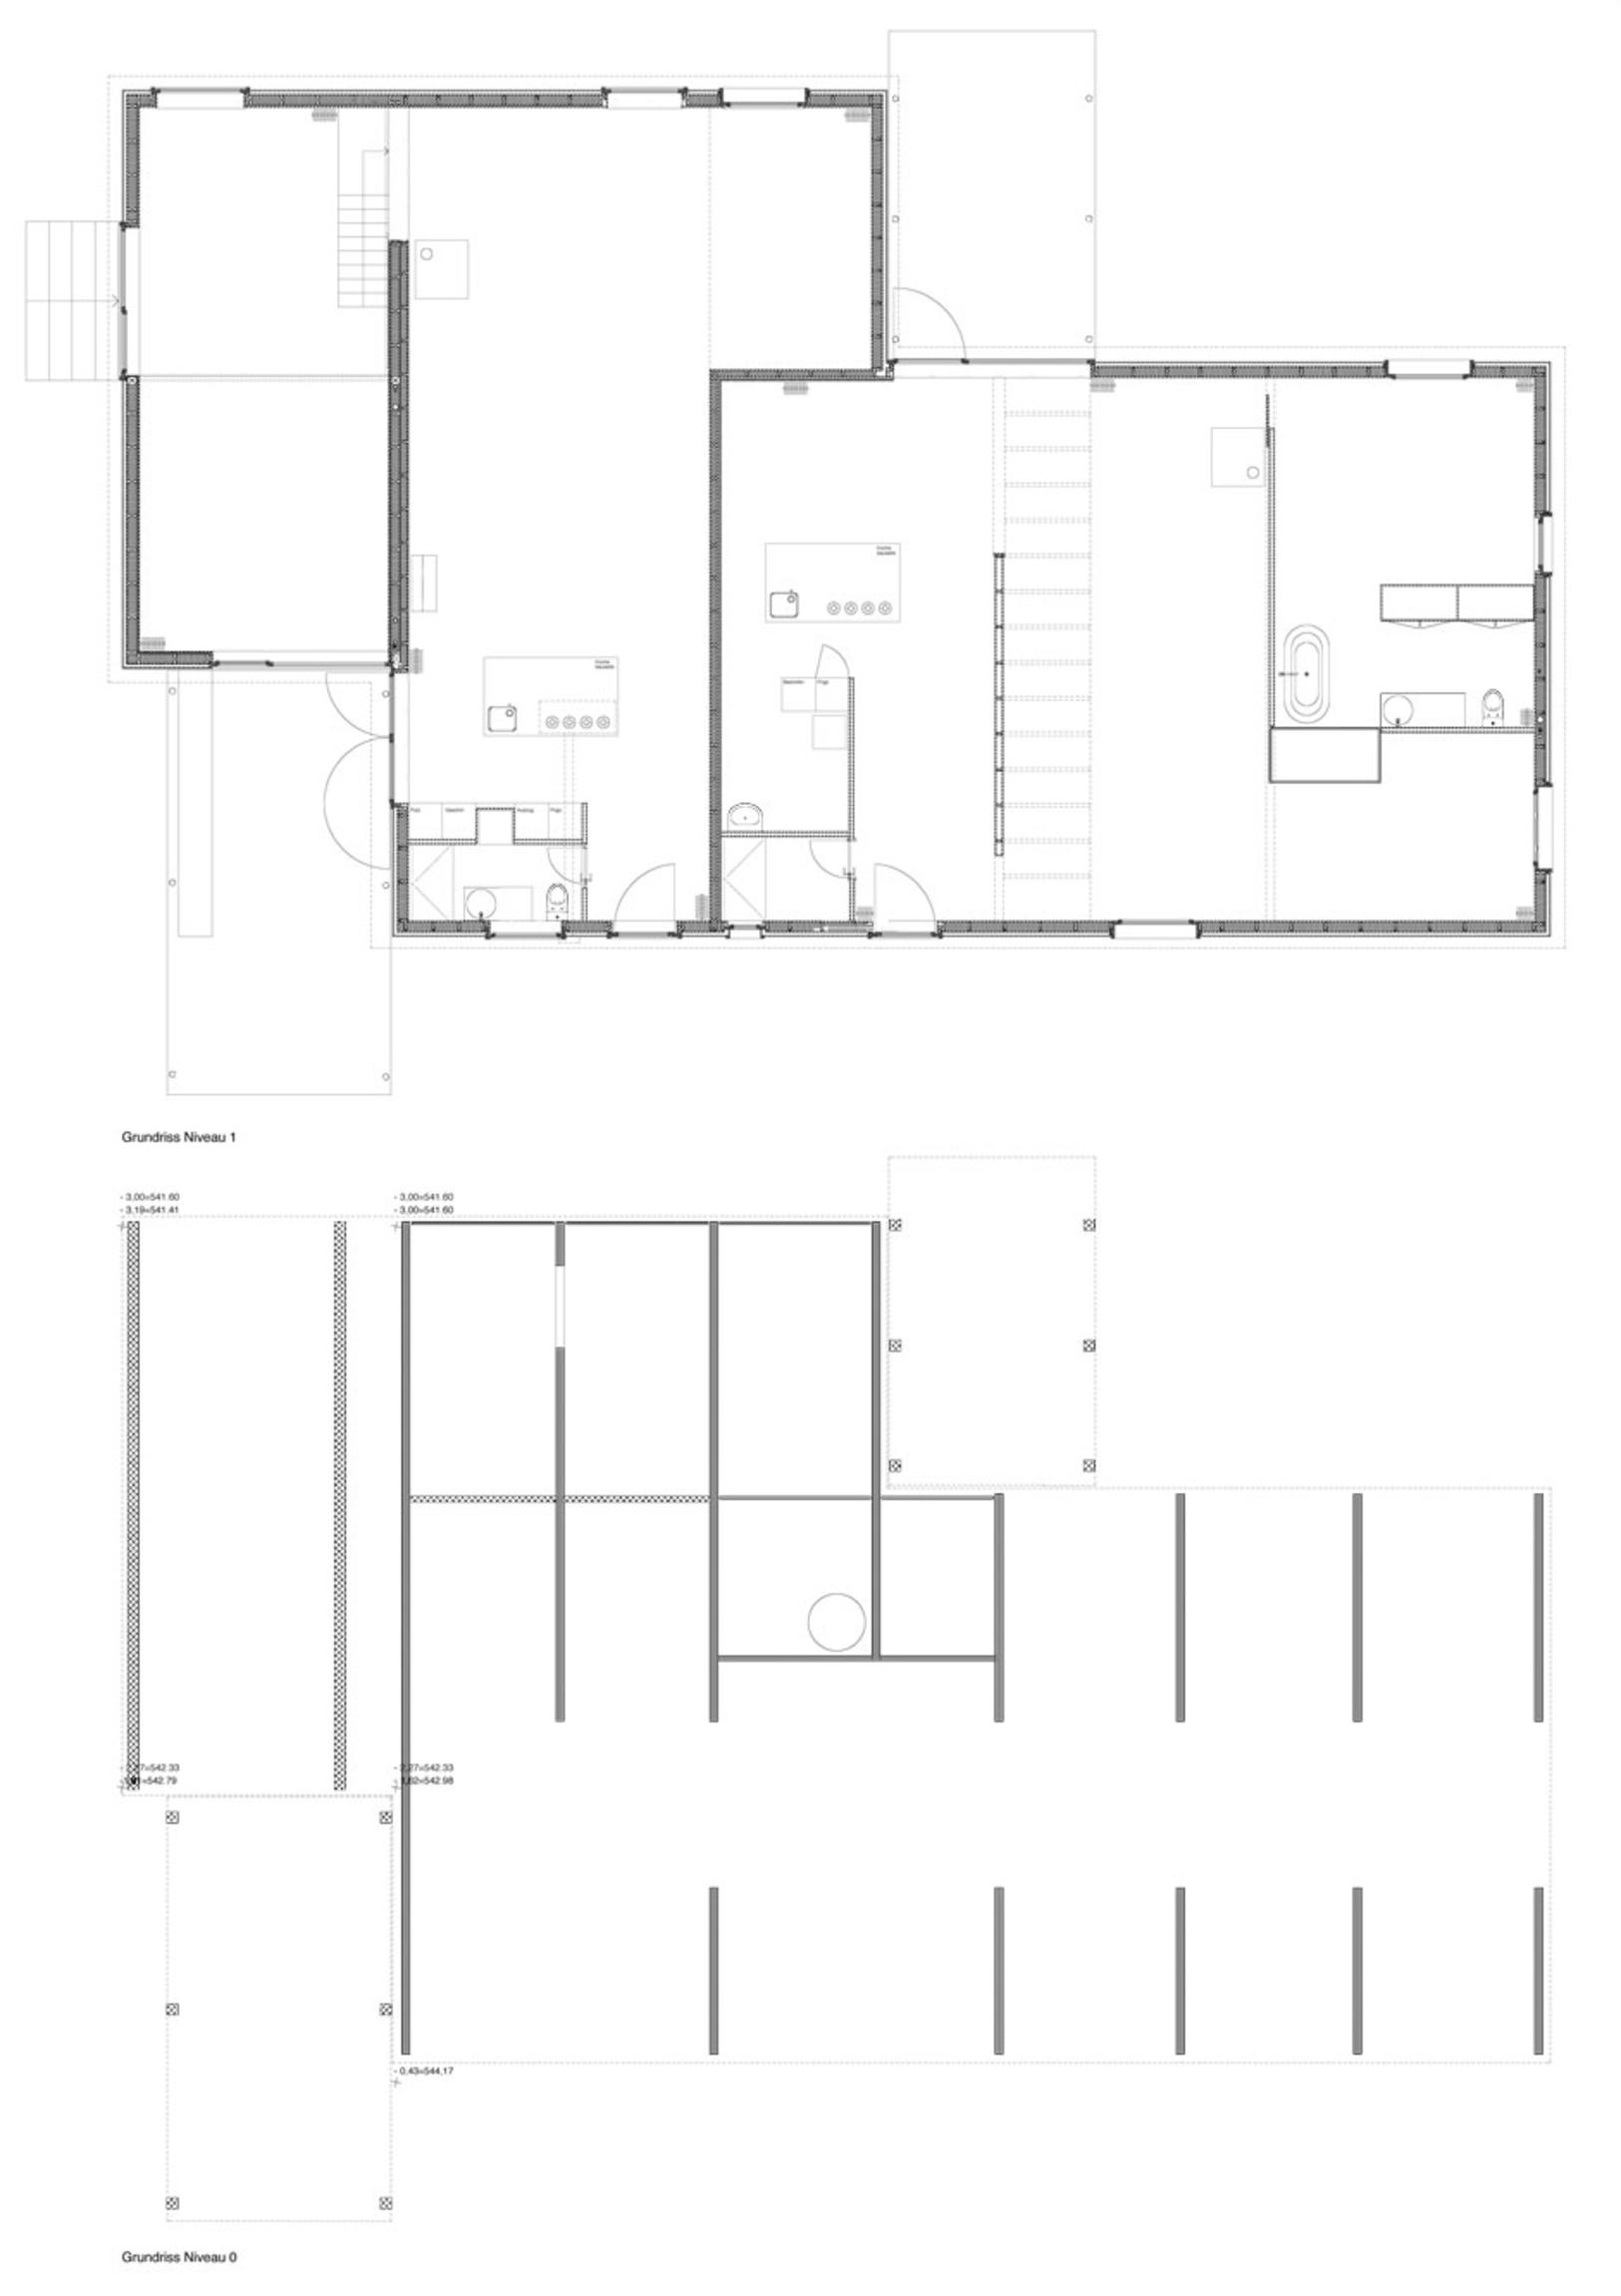 Grundriss Erdgeschoss und Fundament (Schottenstruktur)